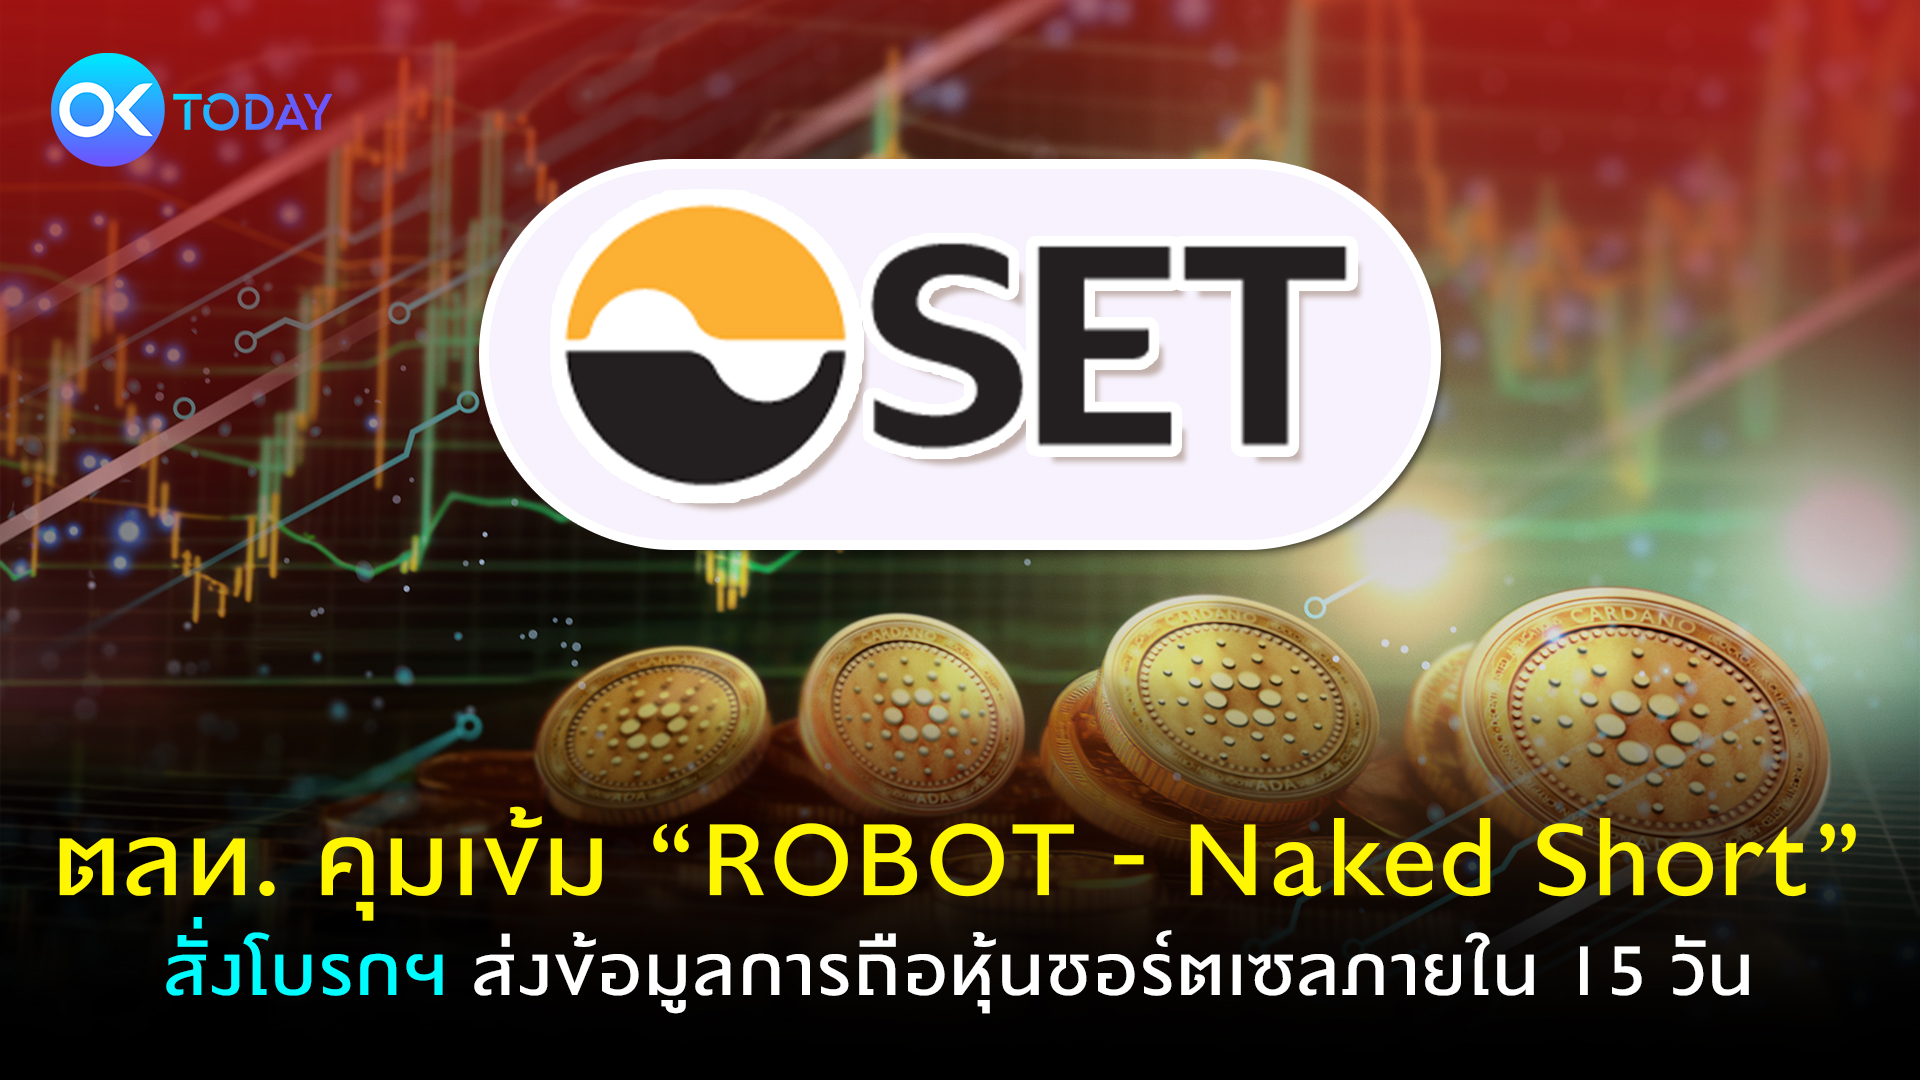 ตลท. คุมเข้ม ‘ROBOT - Naked Short’ สั่งโบรกฯ ส่งข้อมูลการถือหุ้นชอร์ตเซลภายใน 15 วัน